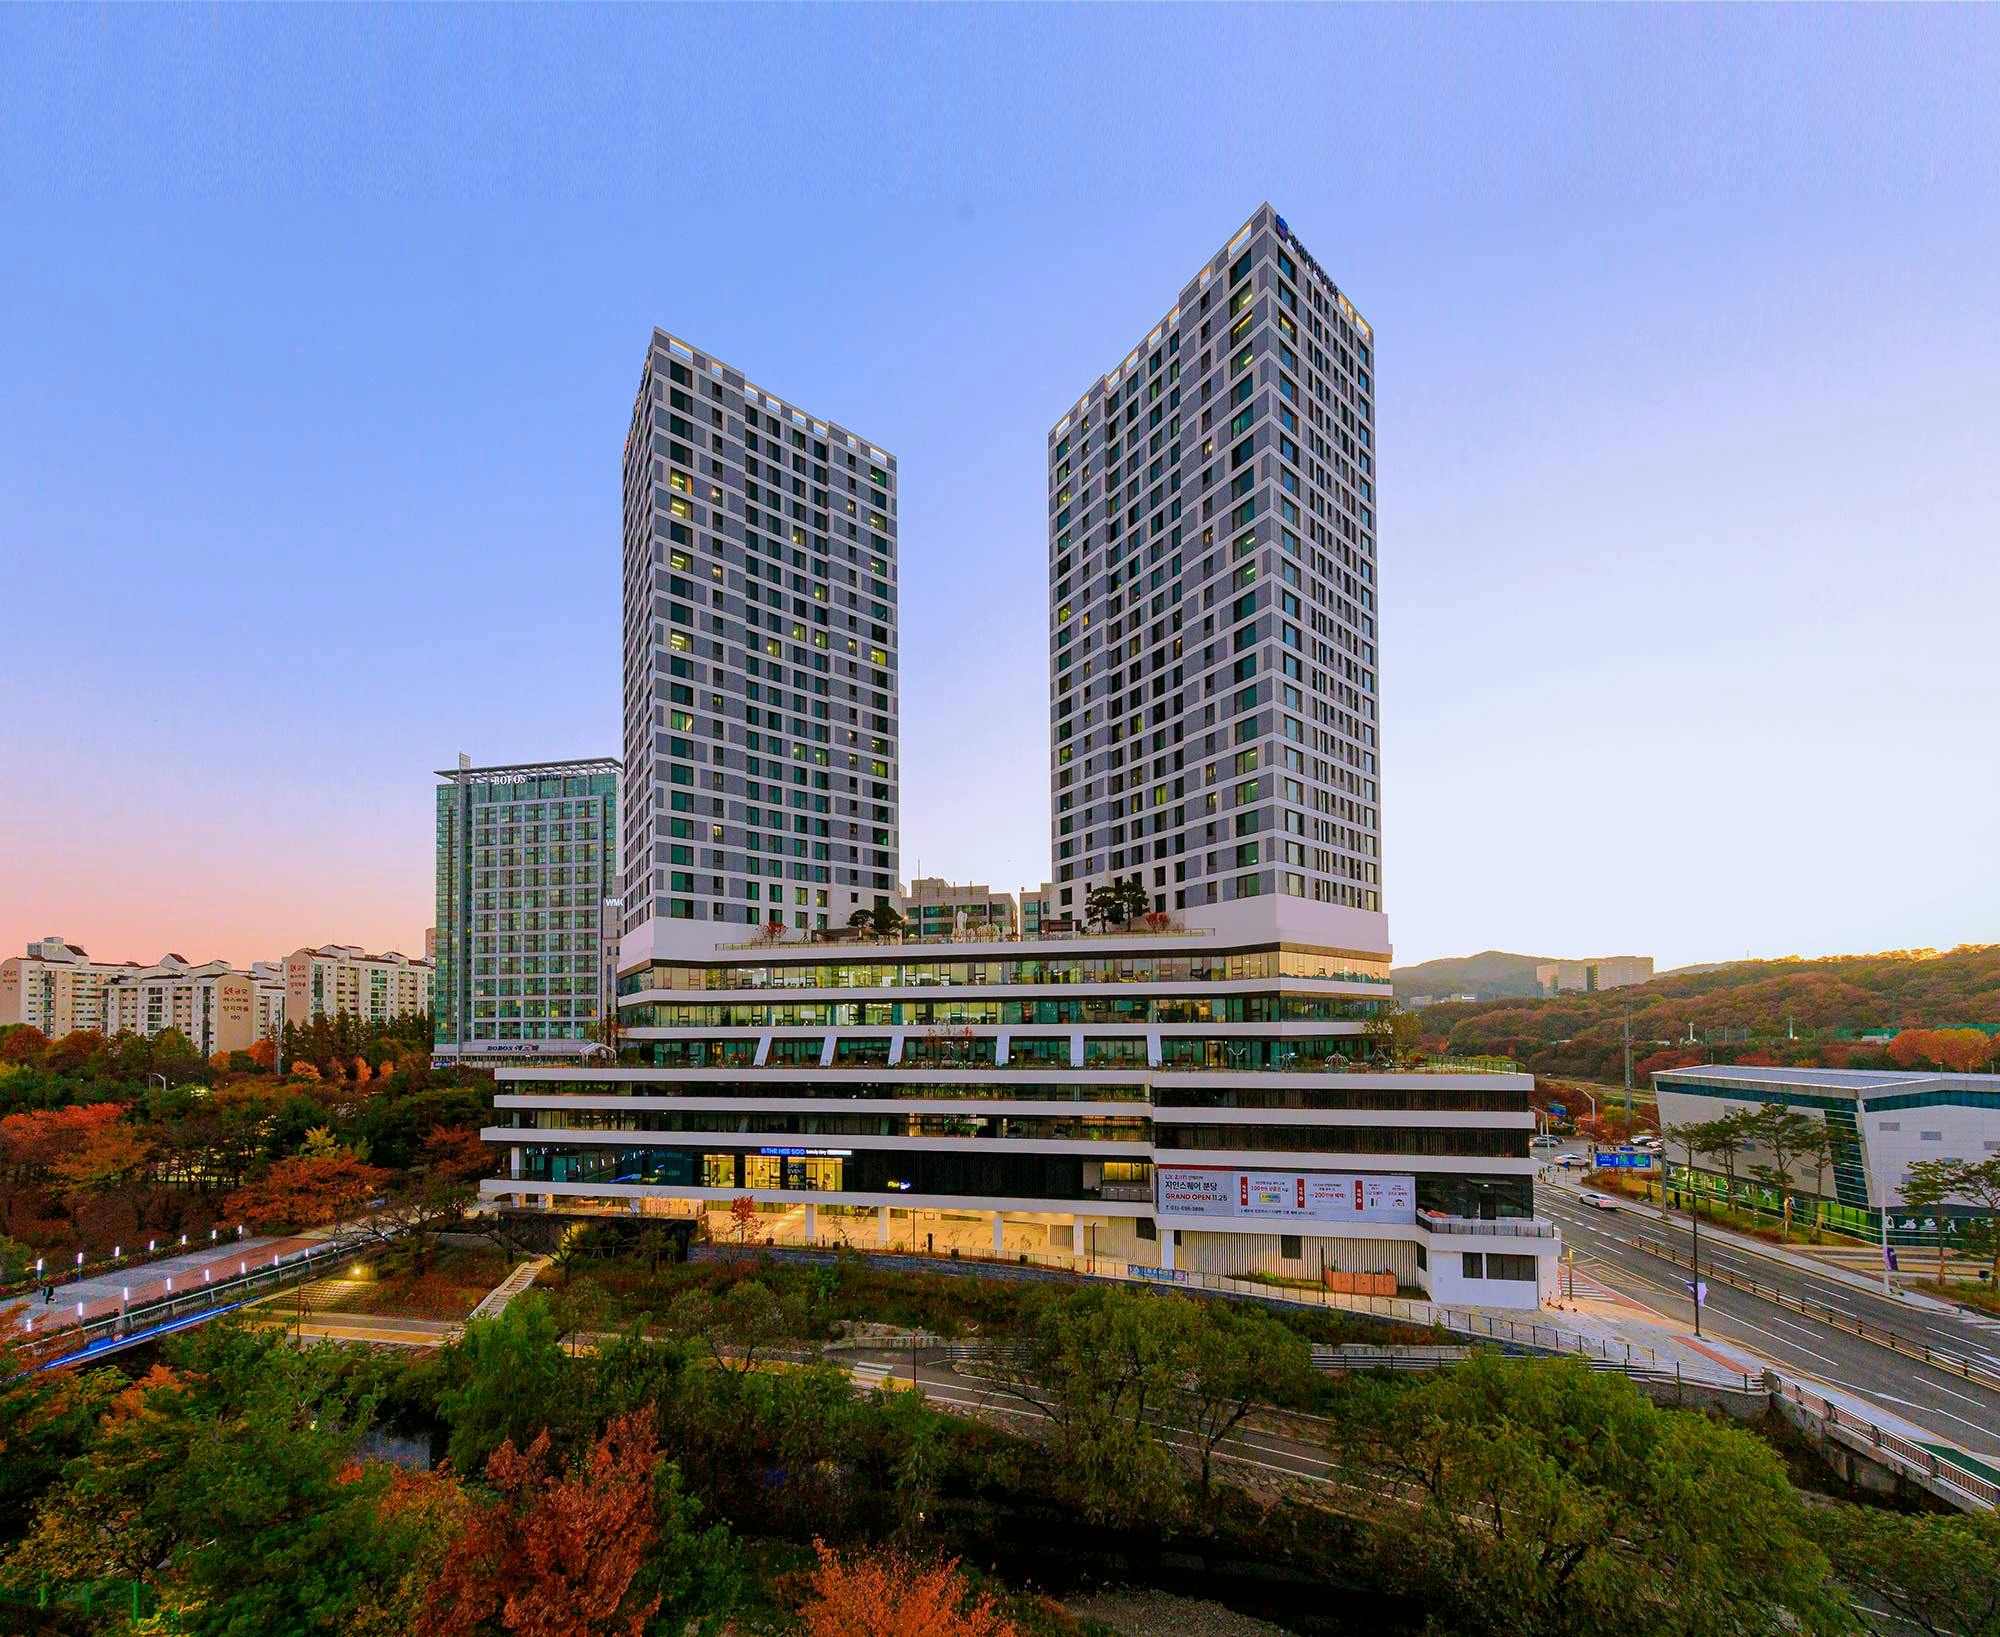 Imagem número 33 da actual secção de Korea: Ode to contemporary architecture amidst Sakura blossoms thanks to Dekton da Cosentino Portugal